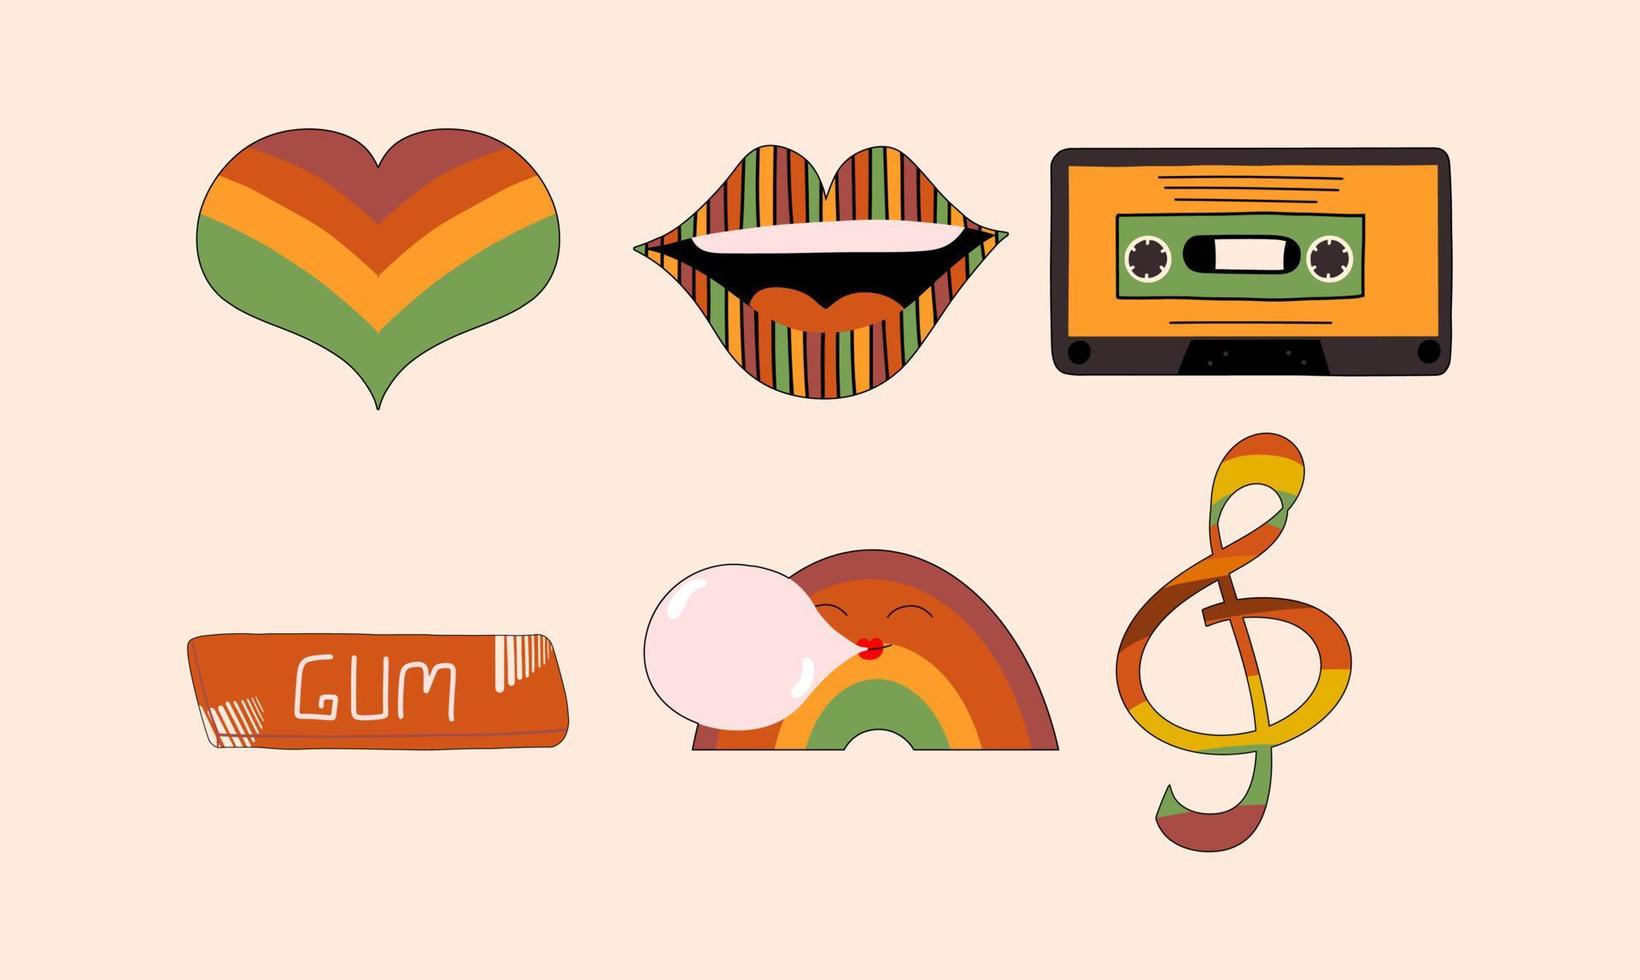 reeks van retro stickers, jaren 70 en jaren 60. verzameling van groovy elementen. lippen, hart, audio cassette, kauwen gom, regenboog. vector illustratie in vlak stijl